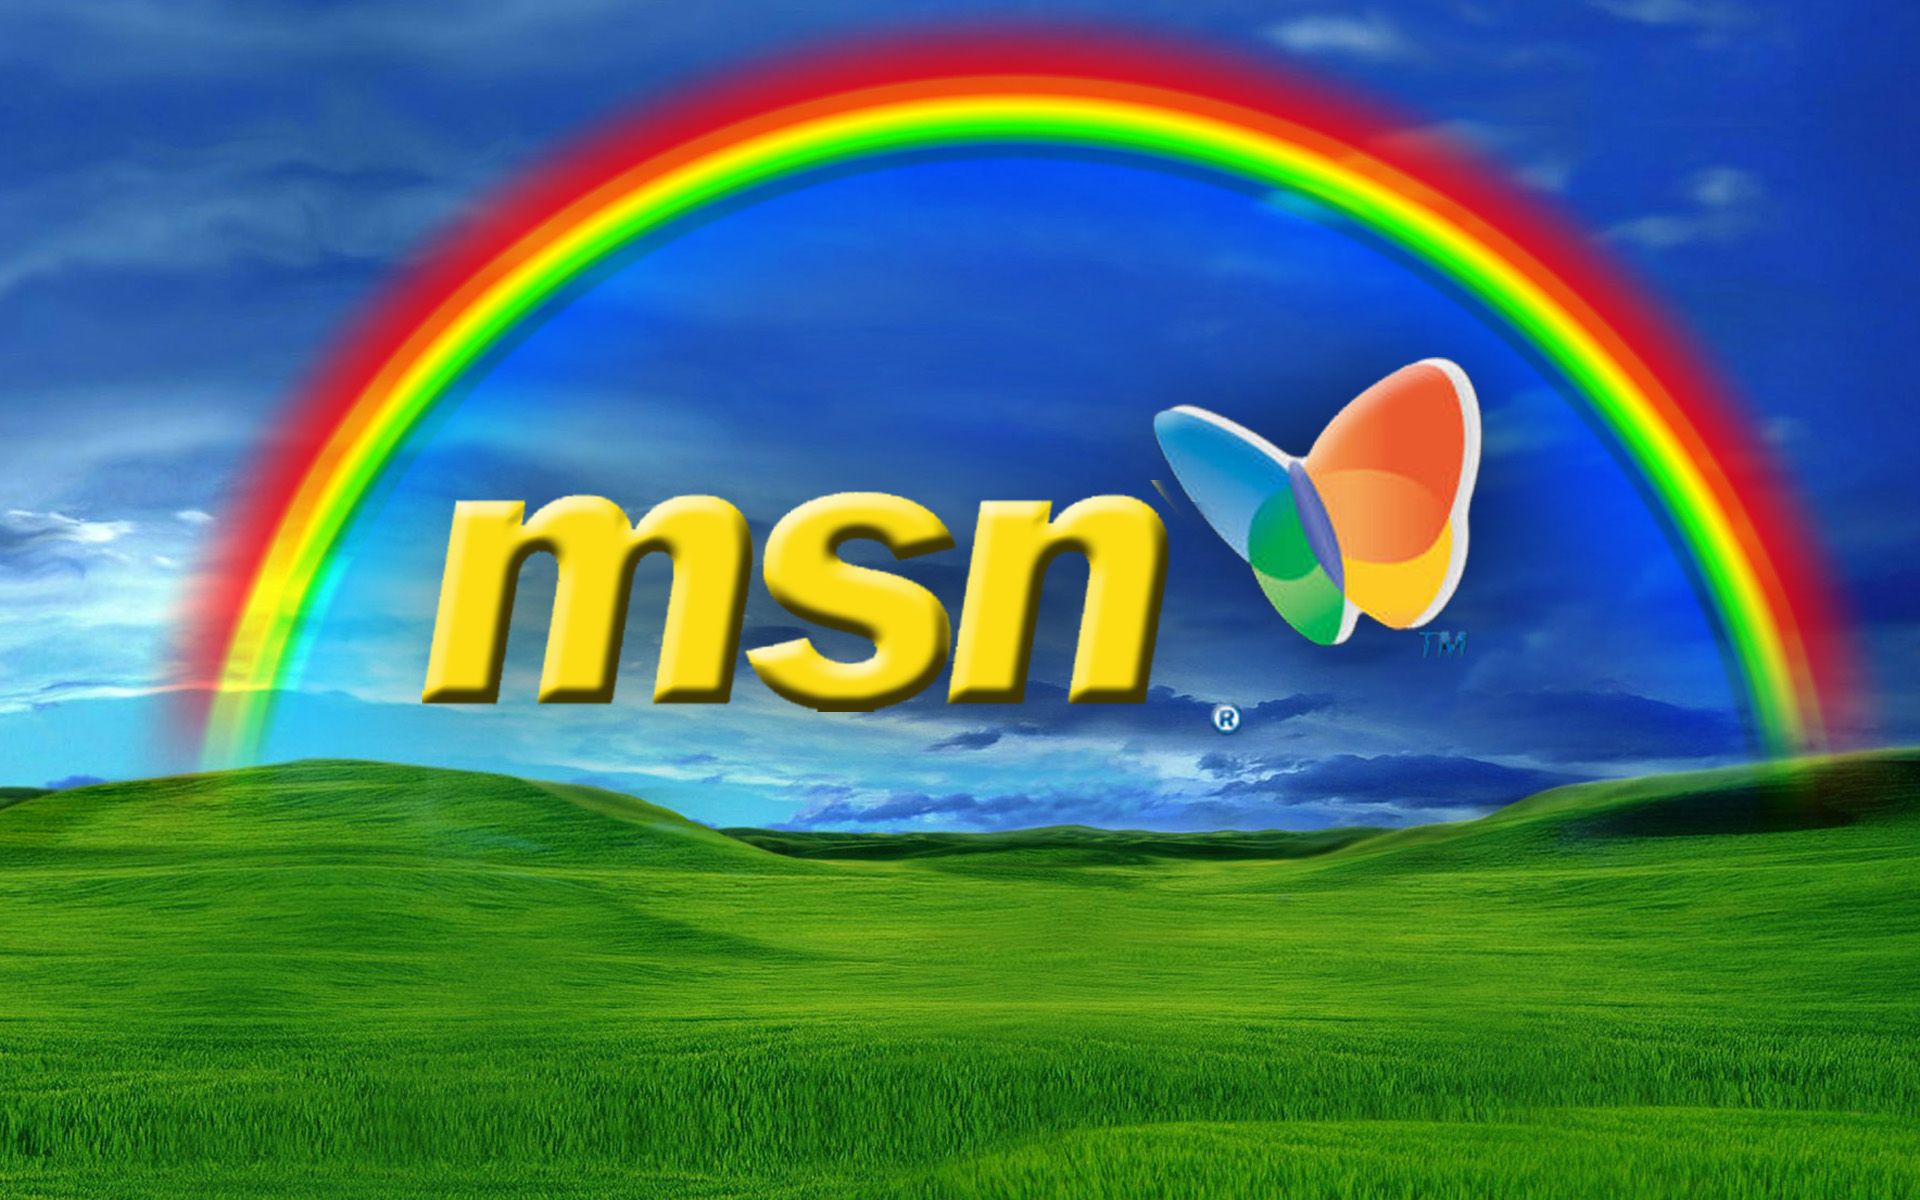 Microsoft msn. Msn. Поисковая система msn. Лого МСН. Msn (Microsoft Network).